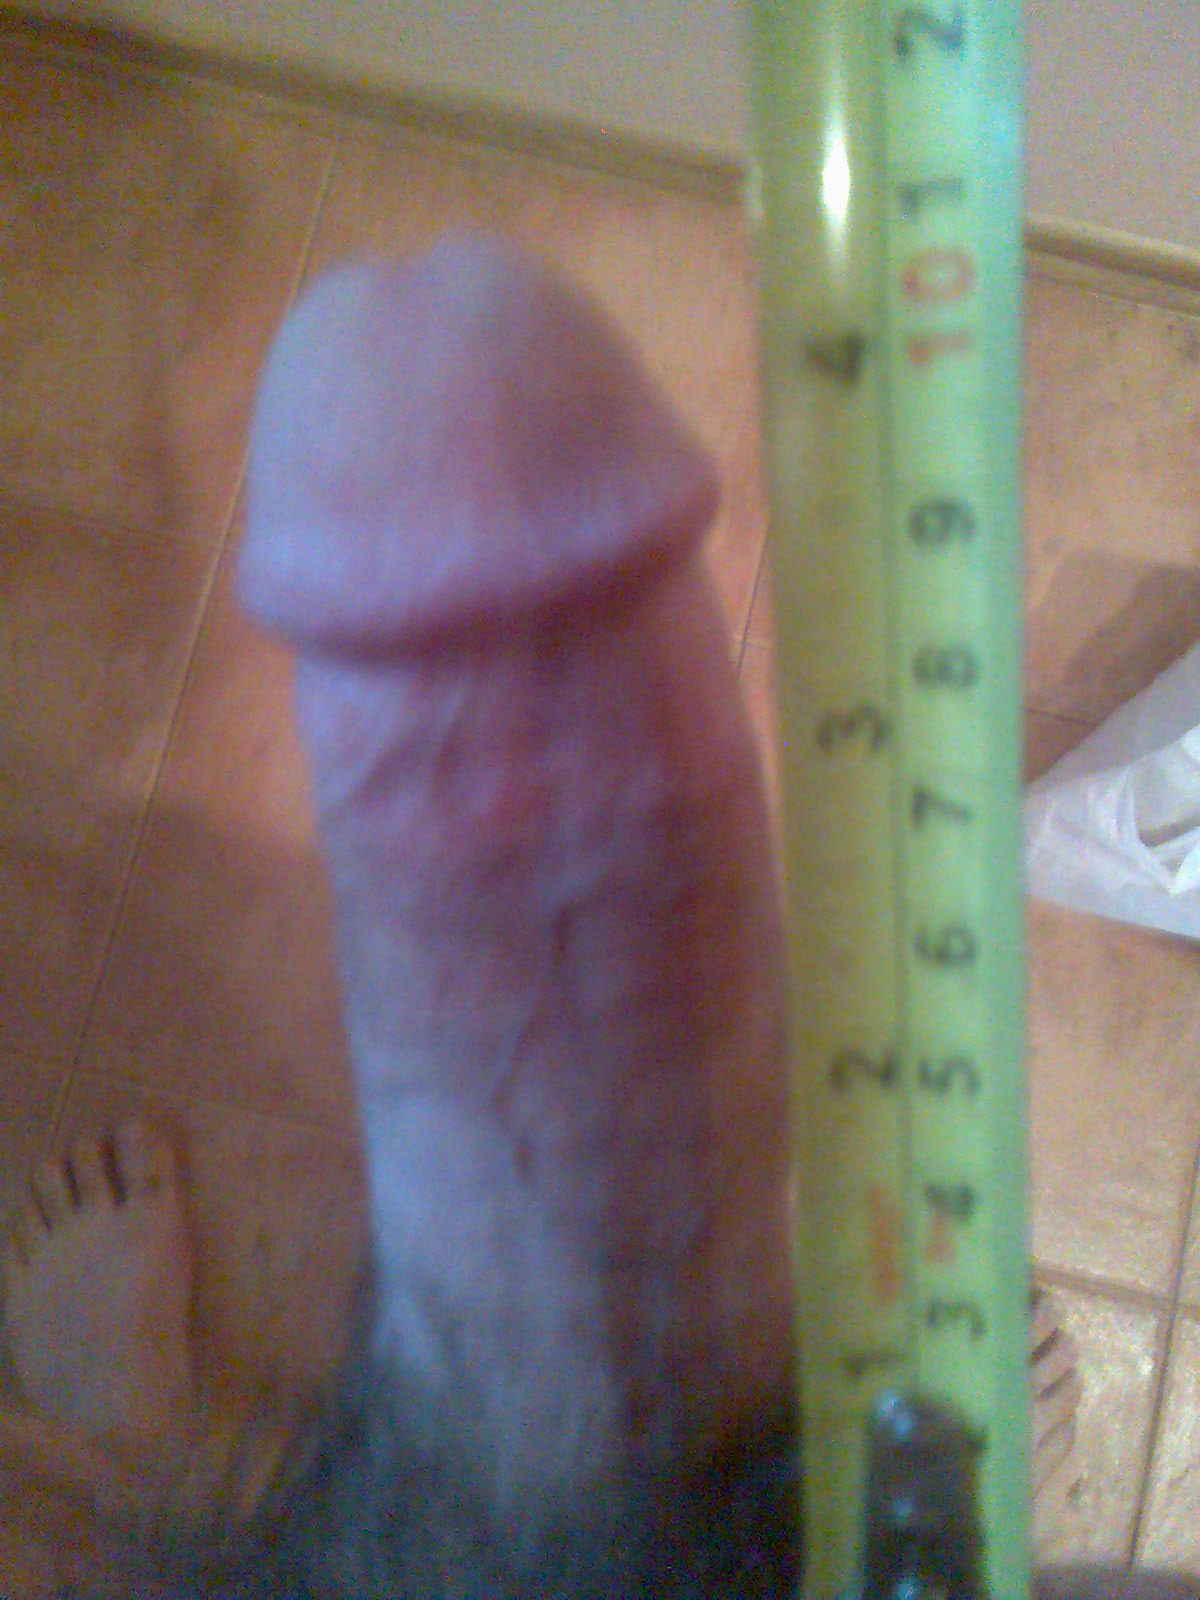 12 cm dick size